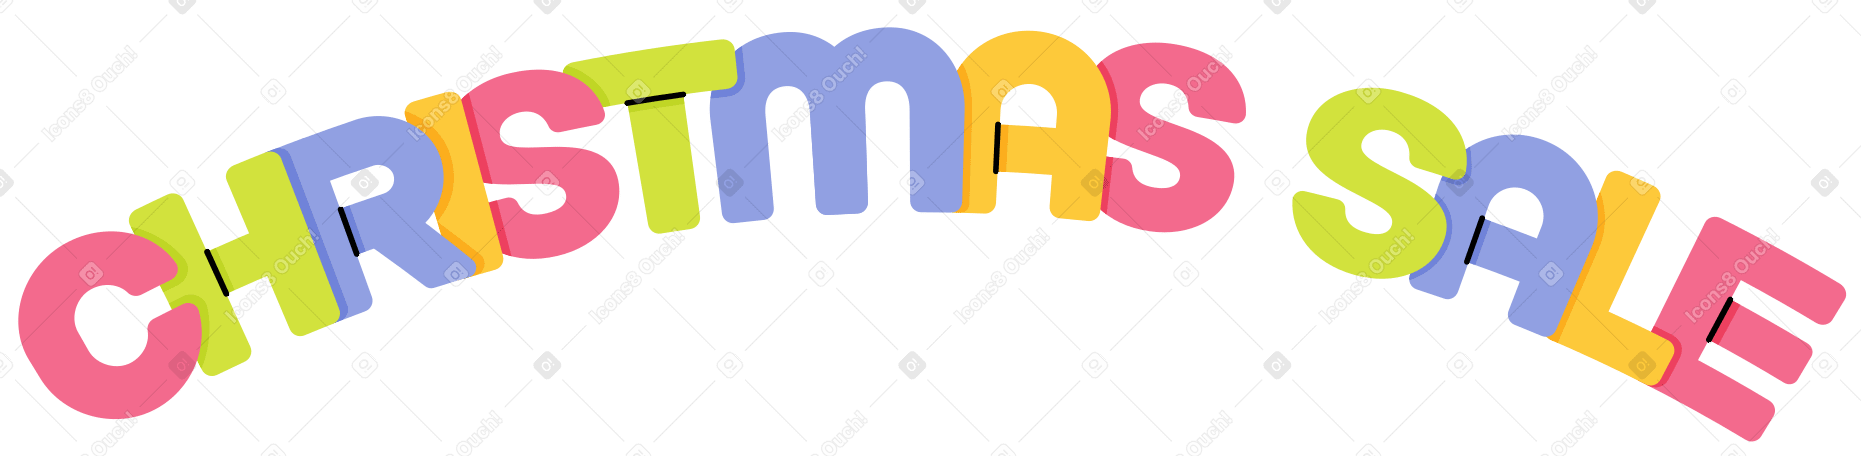 lettering christmas sale Illustration in PNG, SVG